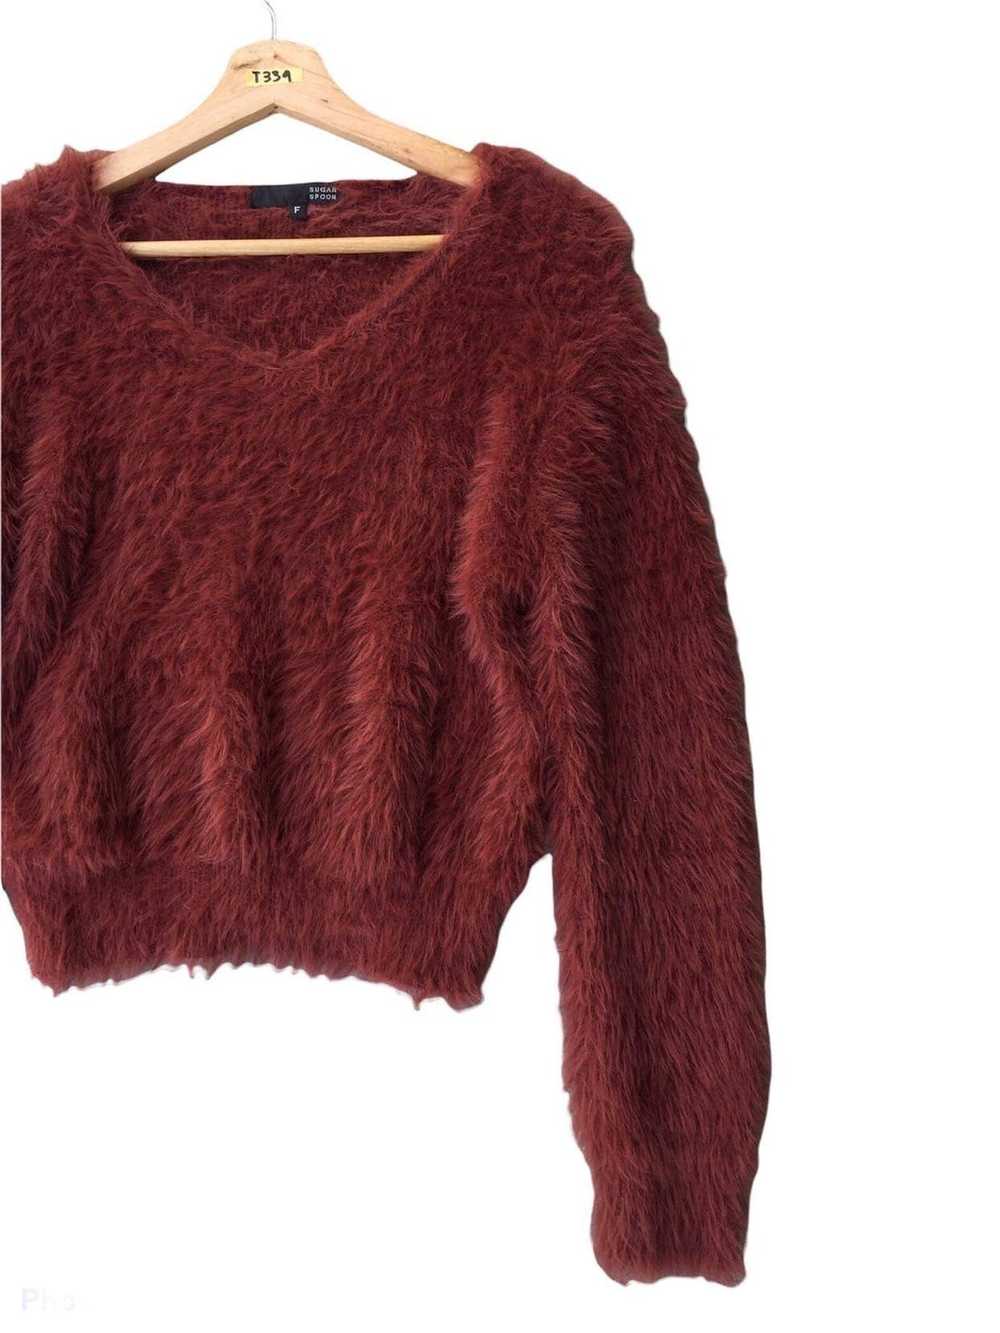 Aran Isles Knitwear × Homespun Knitwear × Other �… - image 11